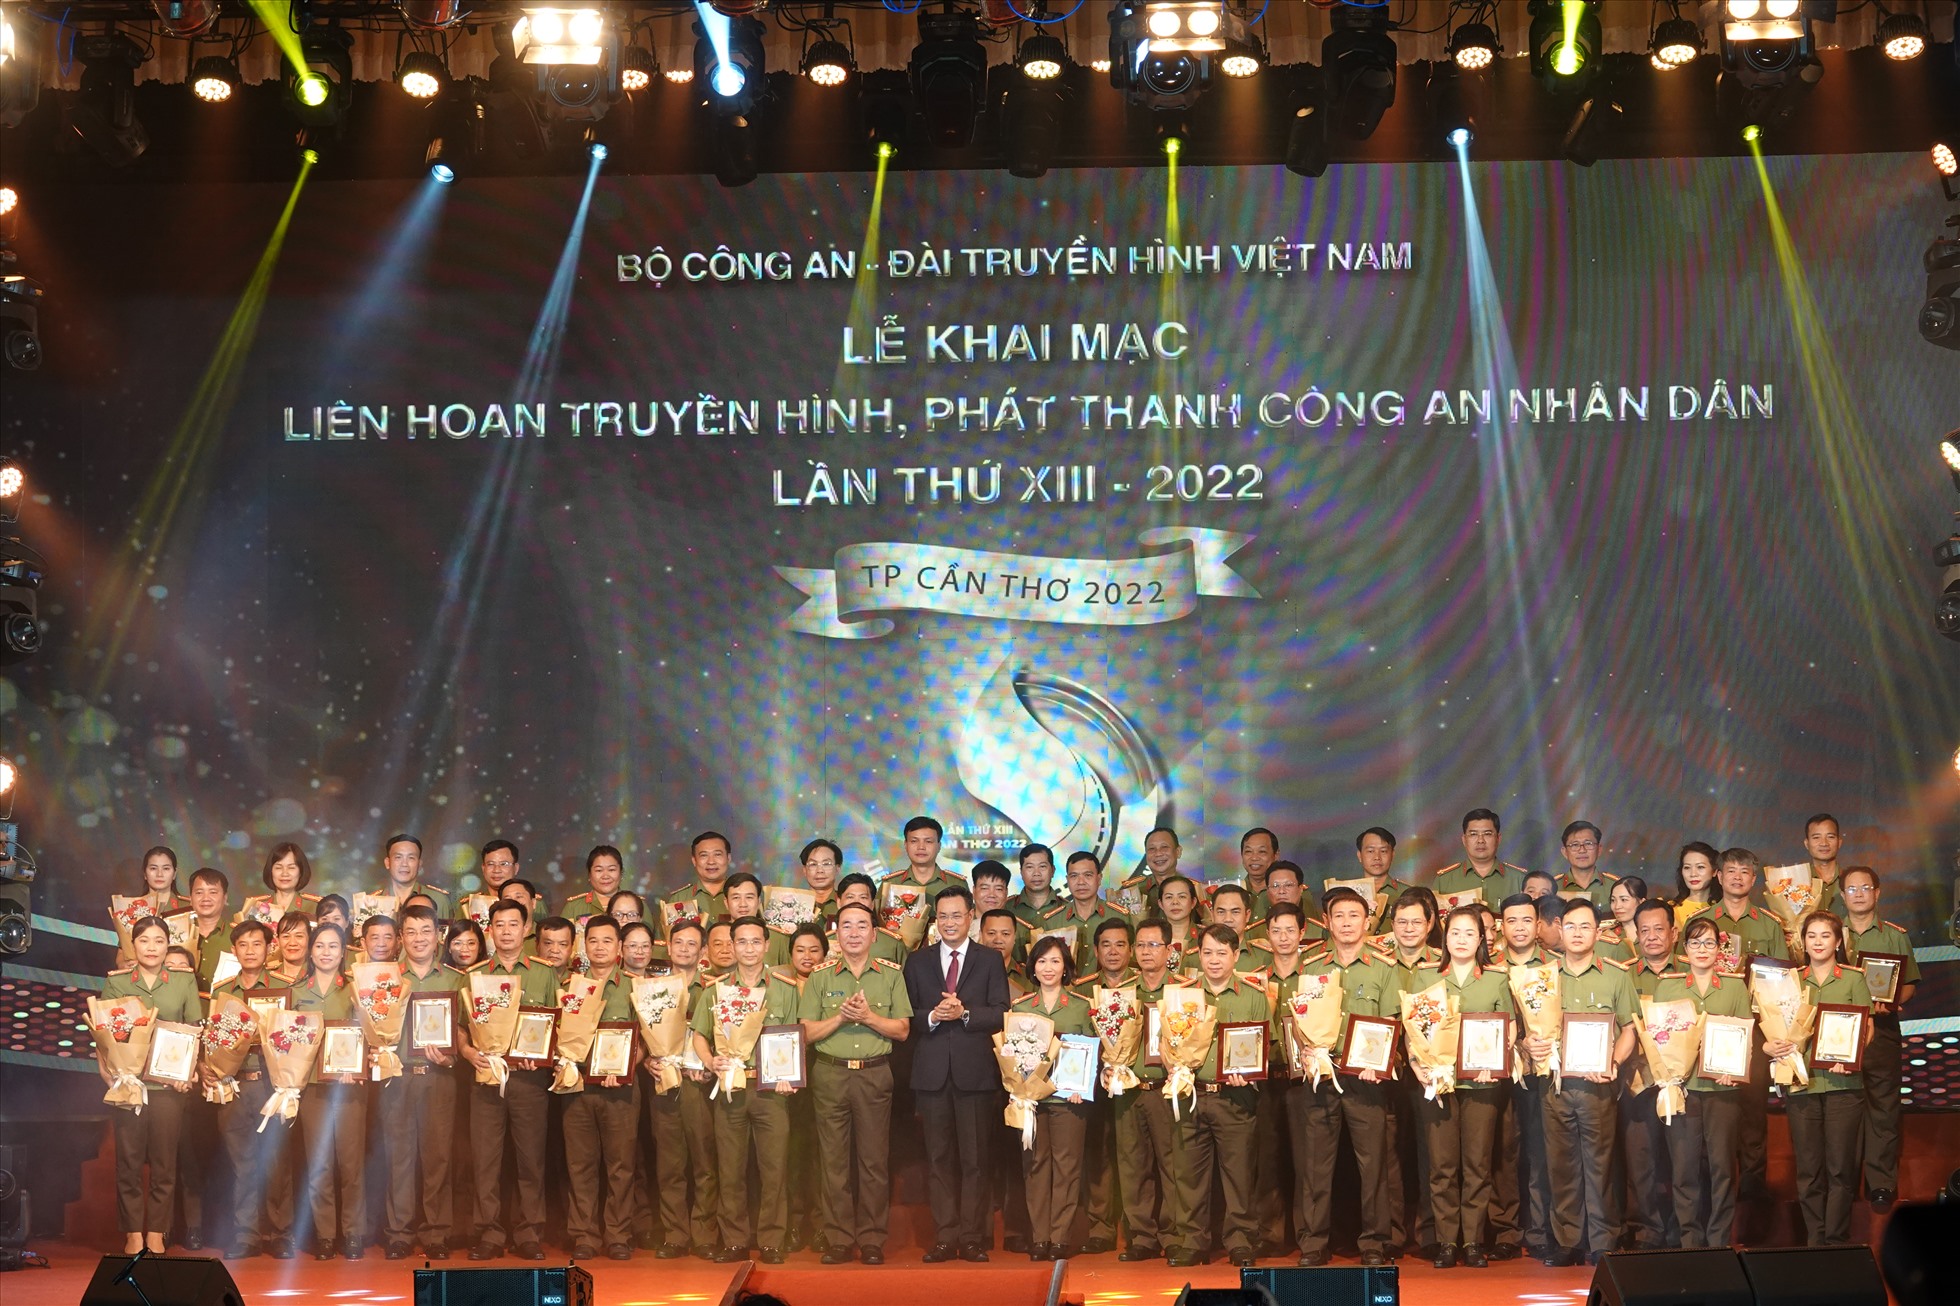 Thượng tướng Trần Quốc Tỏ - Thứ trưởng Bộ Công an cùng ông Lê Ngọc Quang - Tổng Giám đốc Đài Truyền hình Việt Nam trao kỷ niệm chương và hoa cho các đoàn tham gia liên hoan.